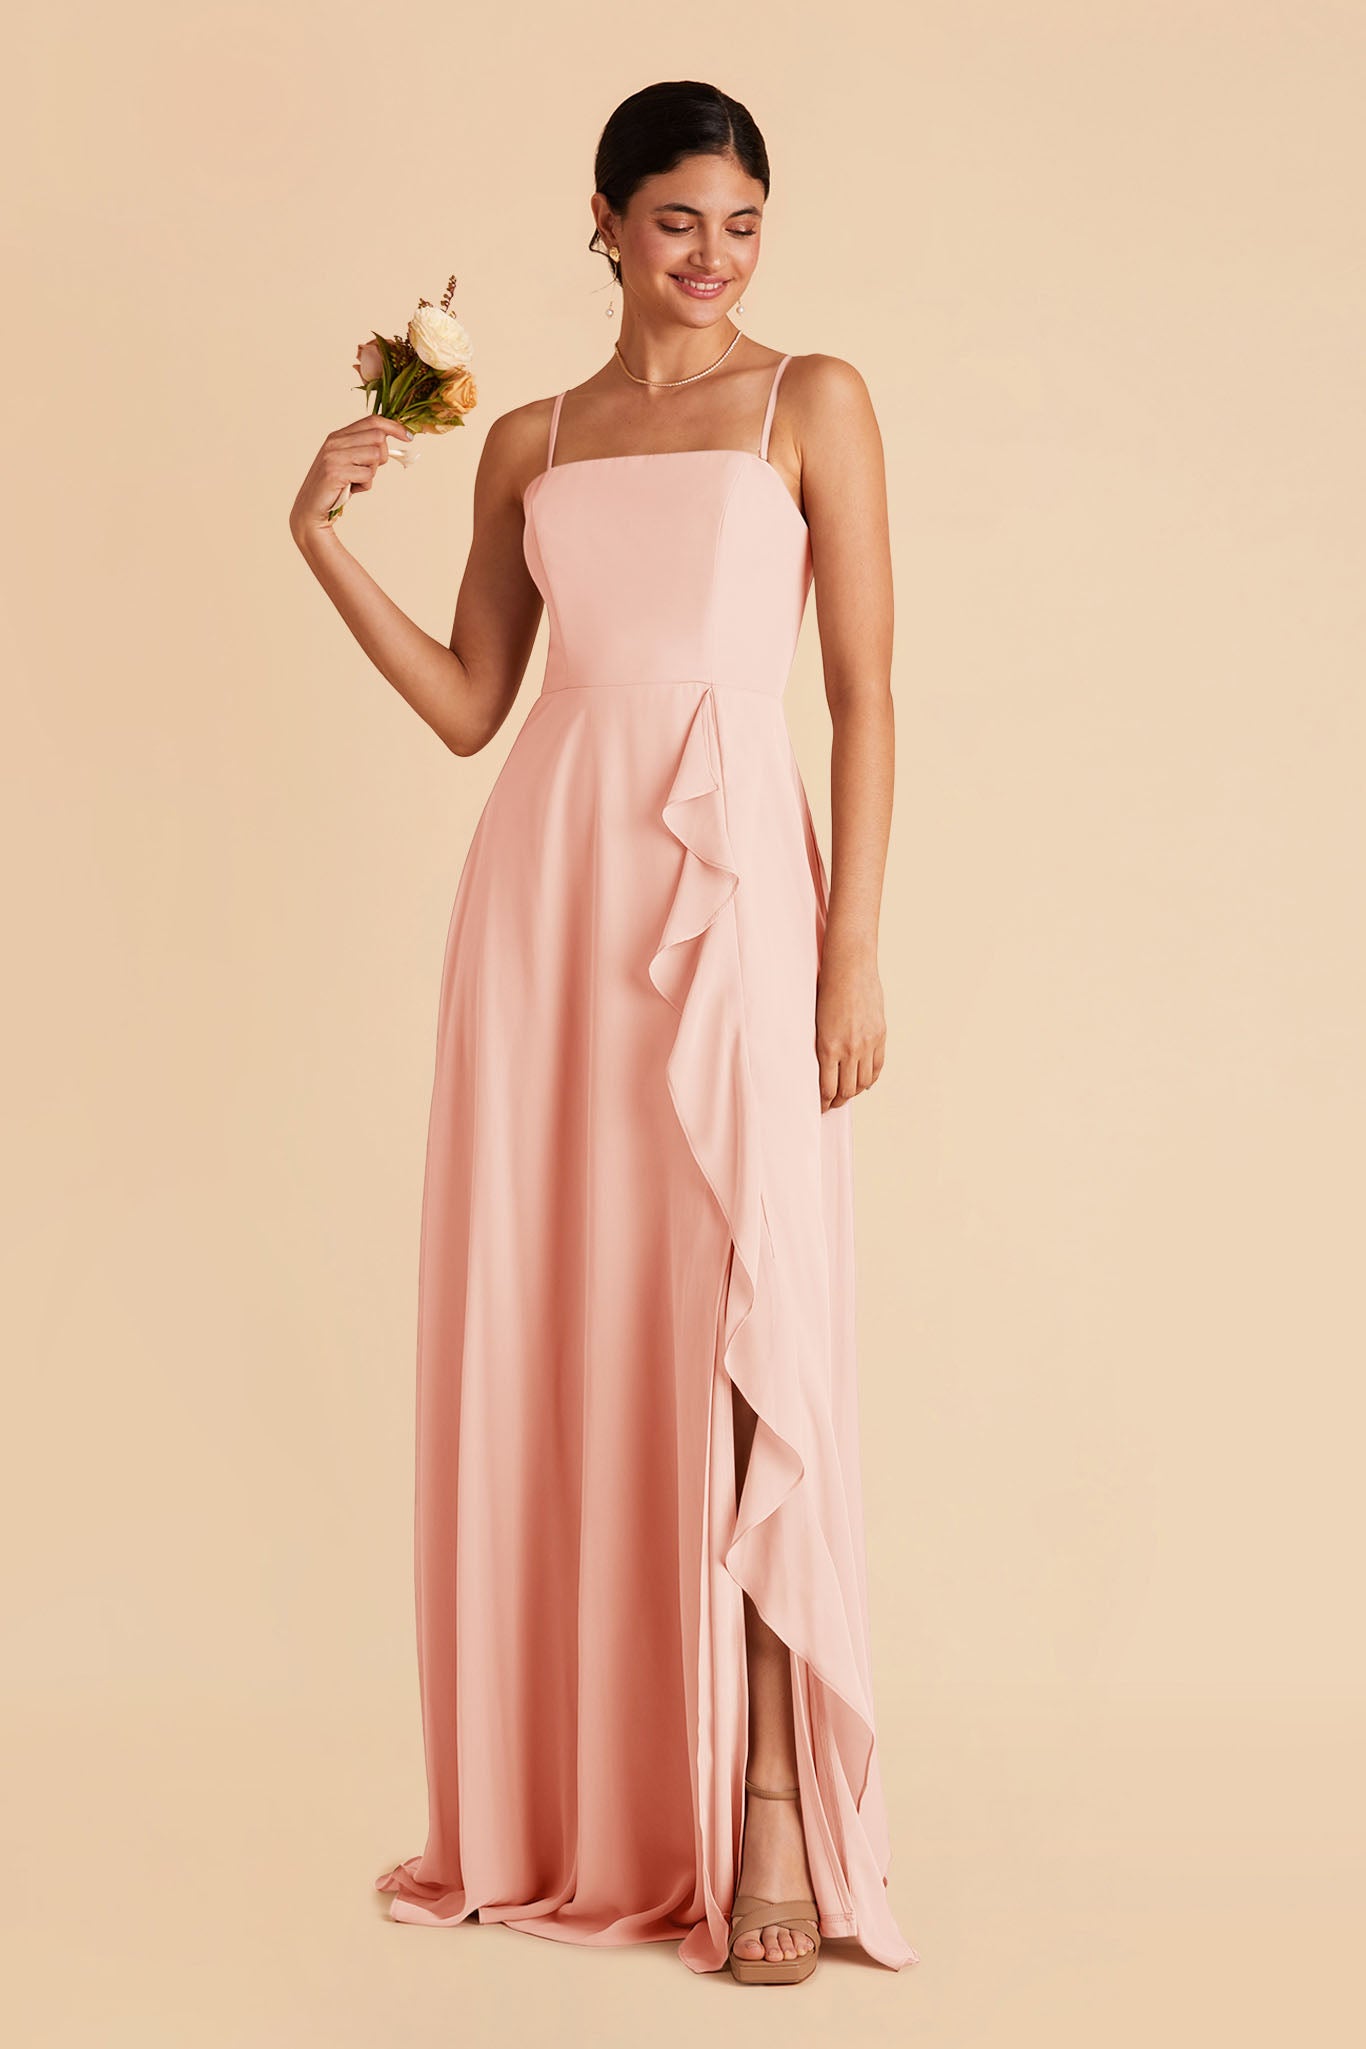 Blush Pink Winnie Convertible Chiffon Dress by Birdy Grey